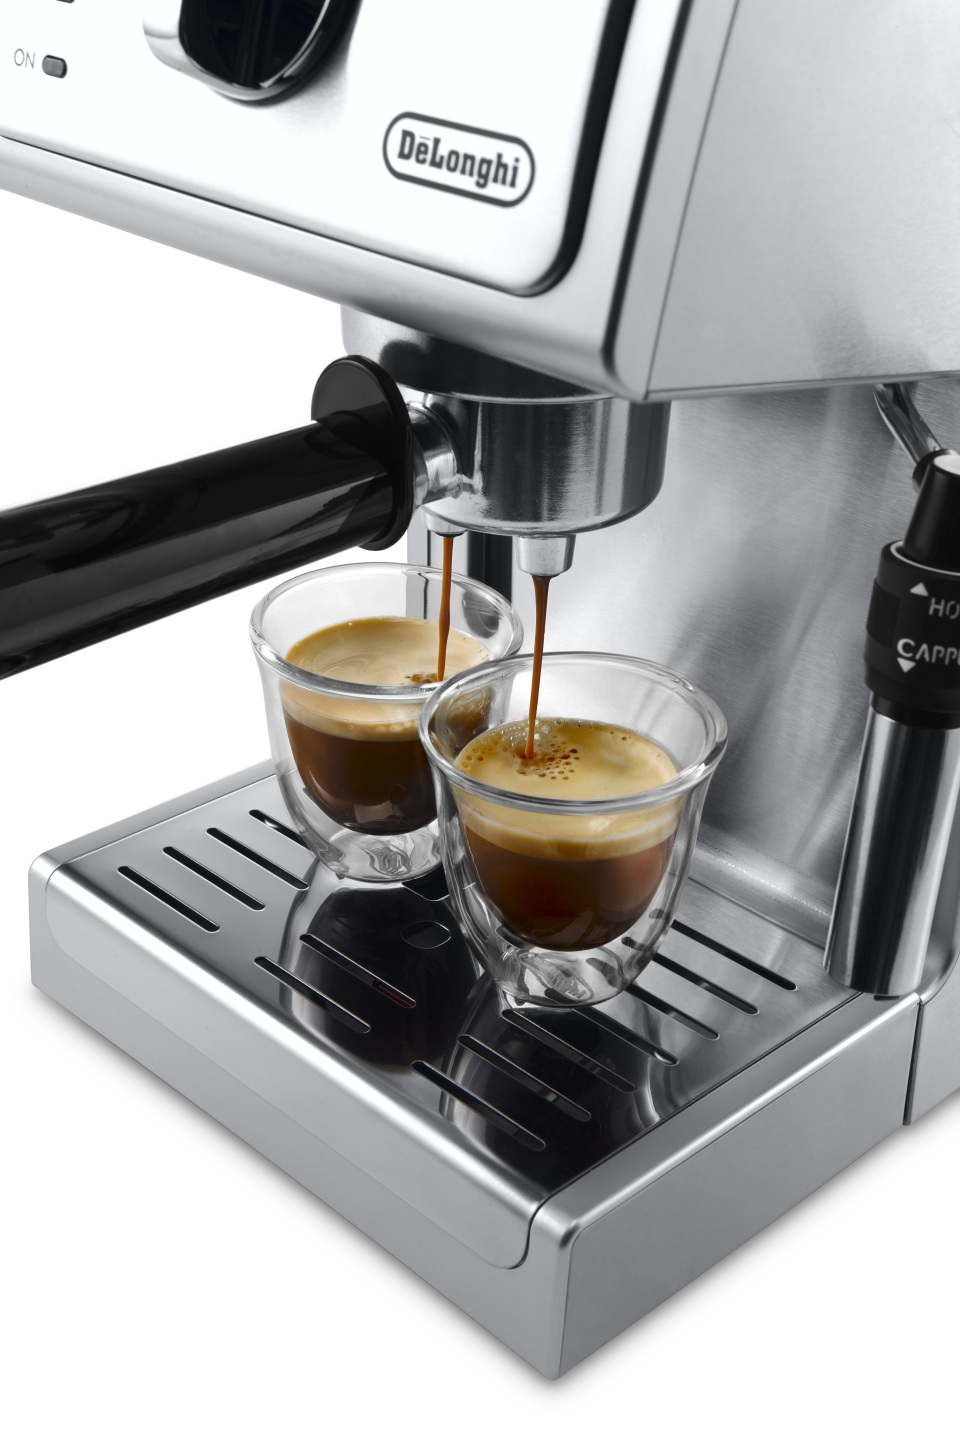 DeLonghi 13 bar Espresso & Cappuccino Machines